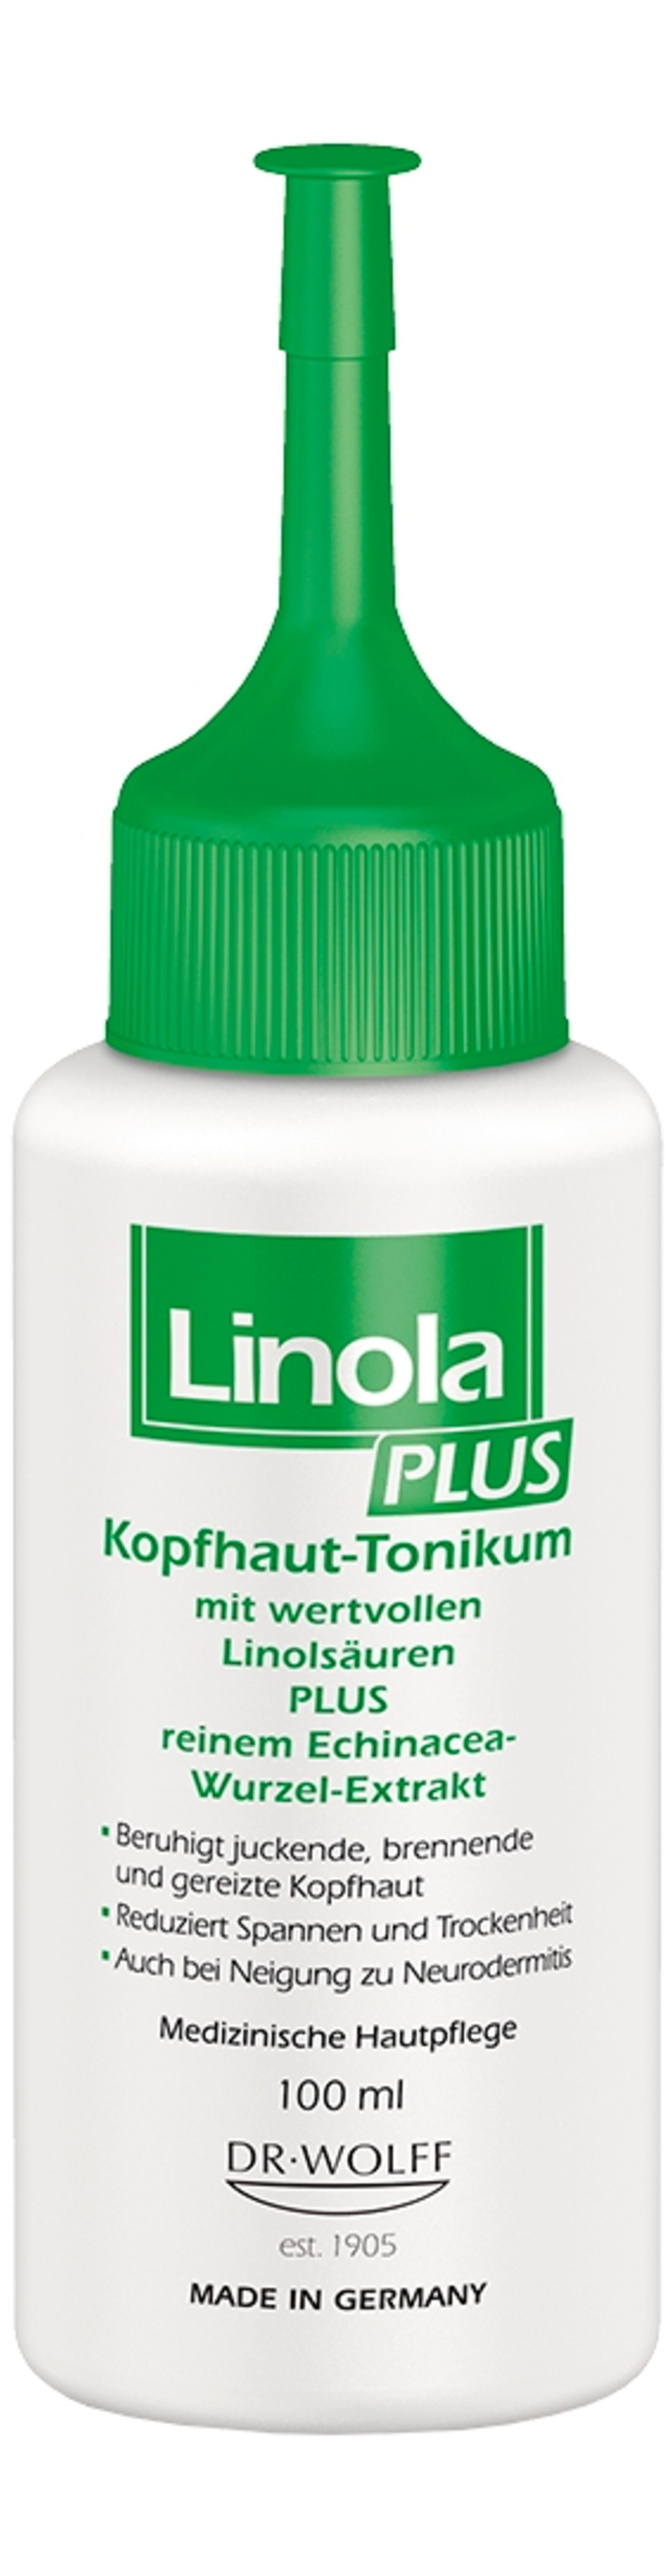 "Linola Plus Kopfhaut- Tonikum“ von Dr. Wolff